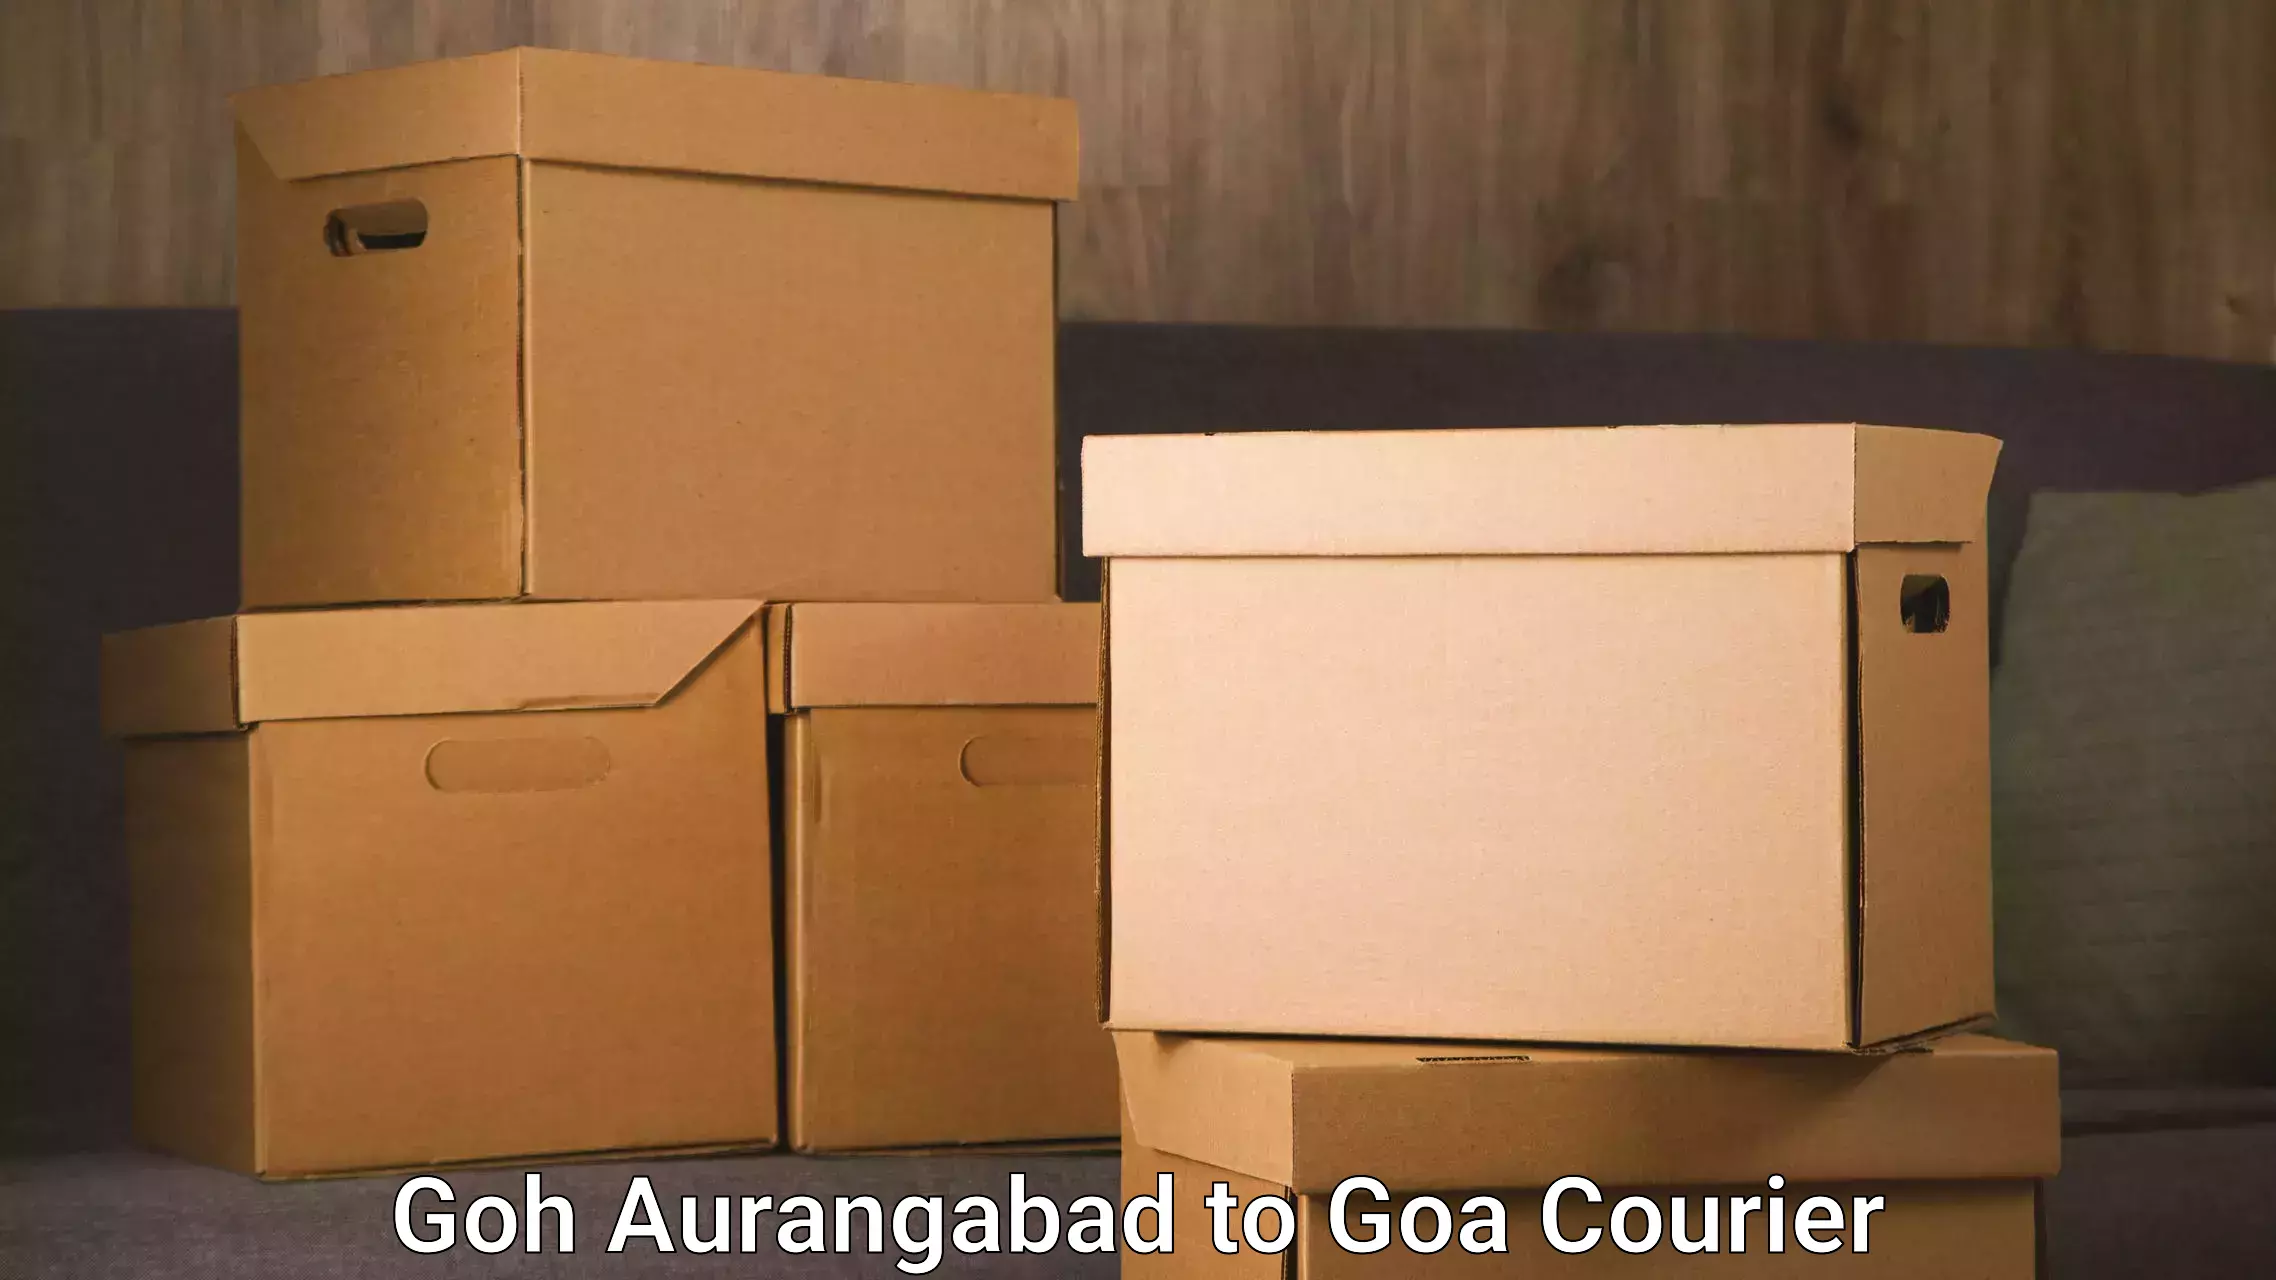 Safe moving services Goh Aurangabad to Ponda